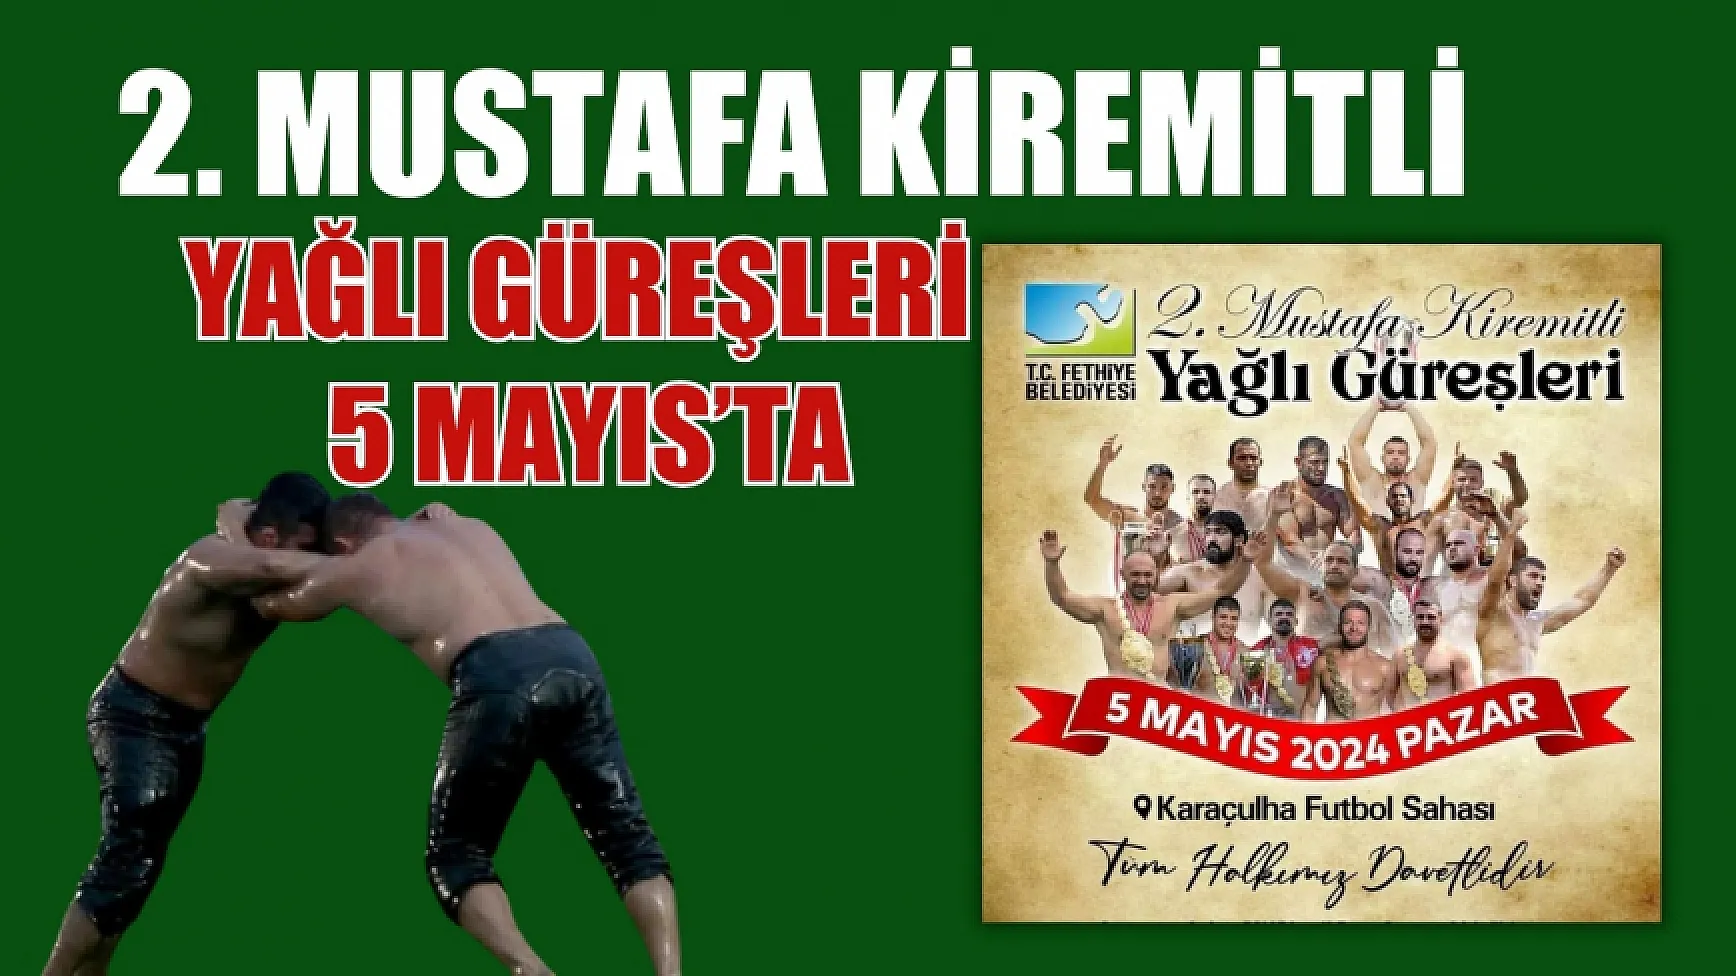 2. Mustafa Kiremitli Yağlı Güreşleri 5 Mayıs’ta